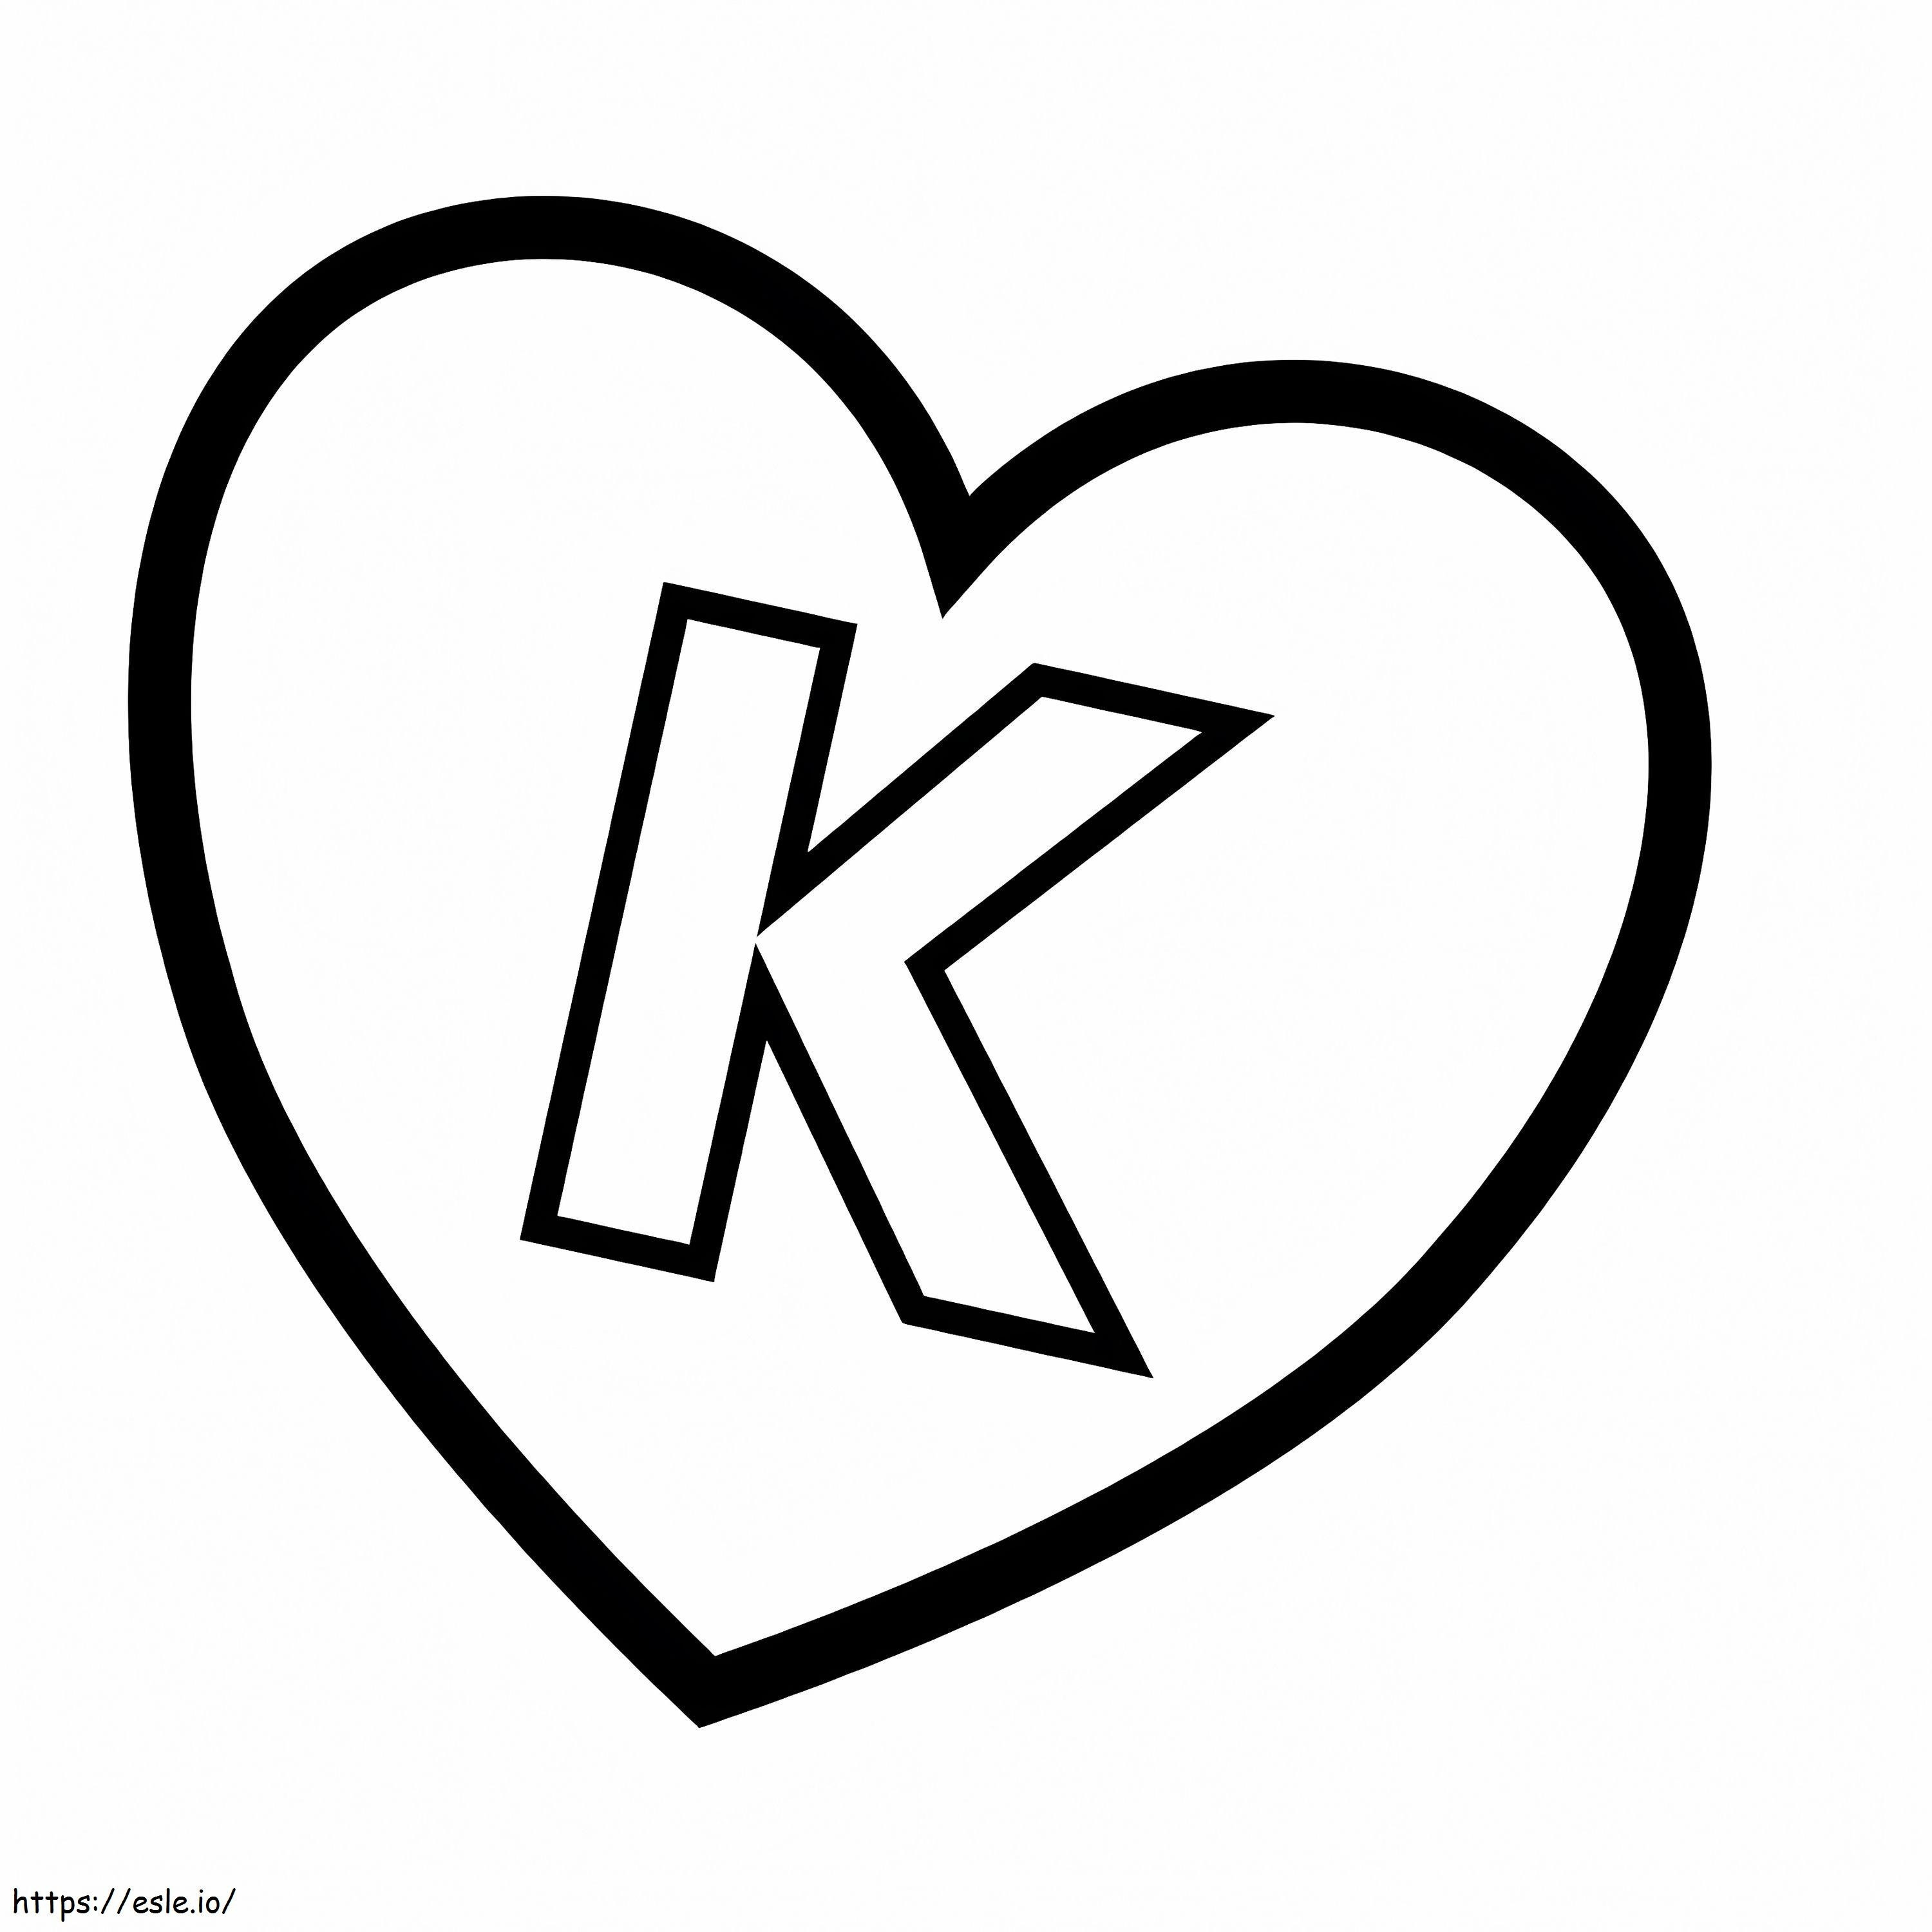 Buchstabe K im Herzen ausmalbilder